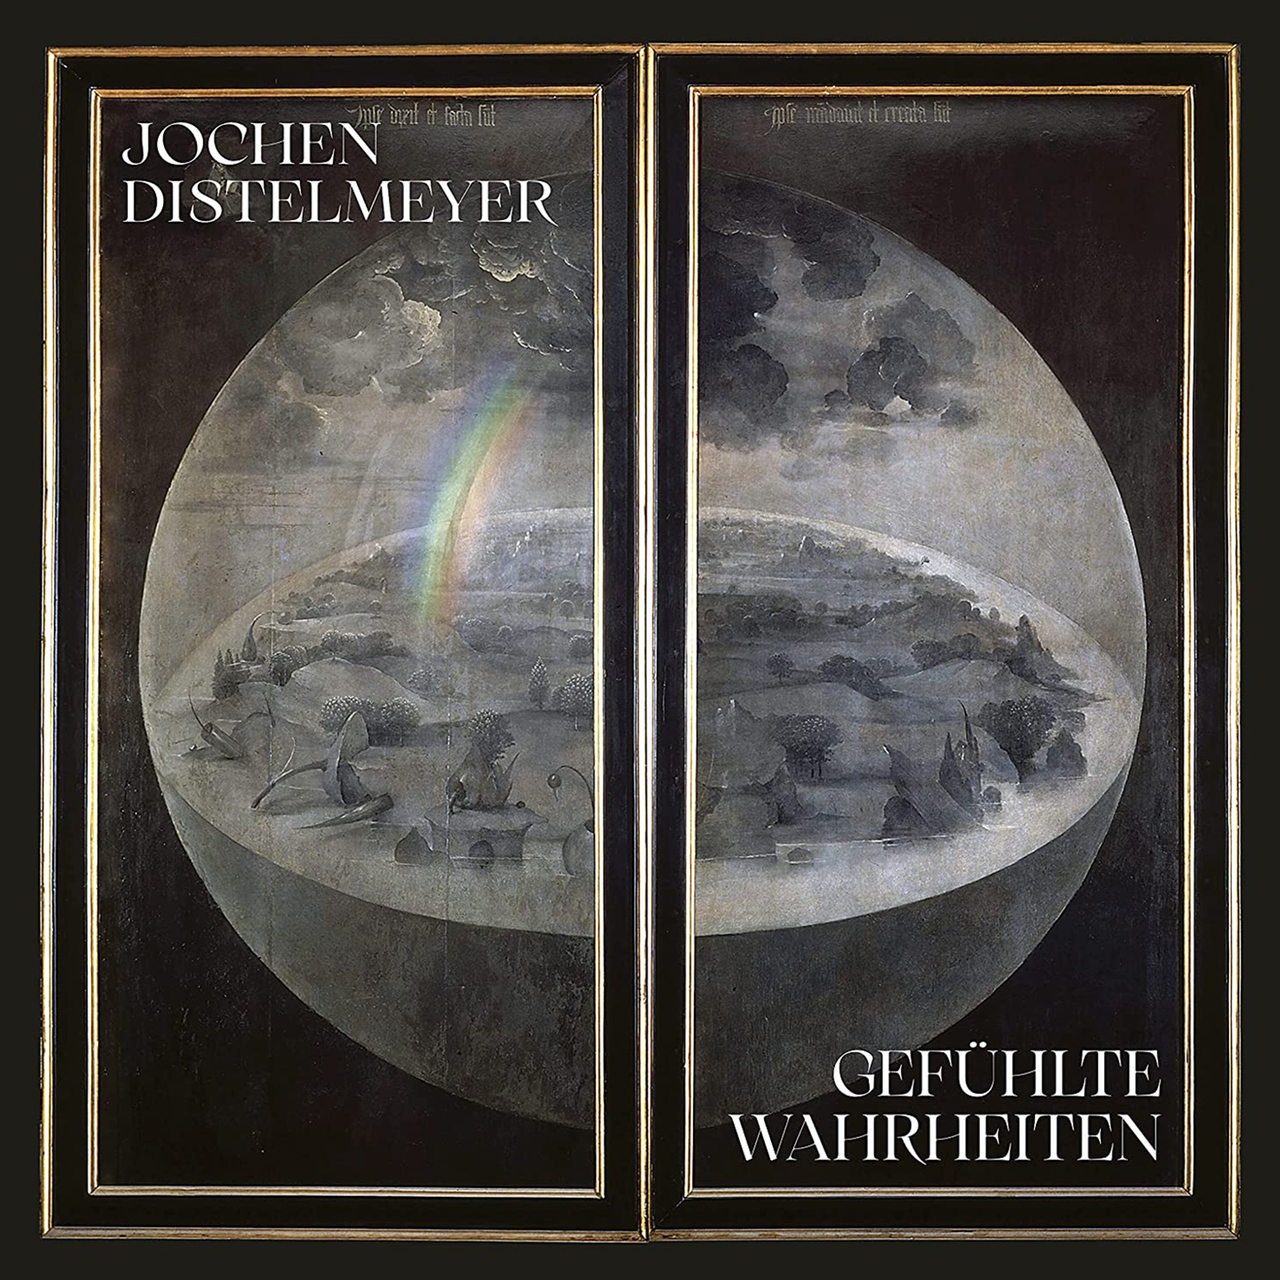 Albumcover Jochen Distelmeyer "Gefühlte Wahrheit"